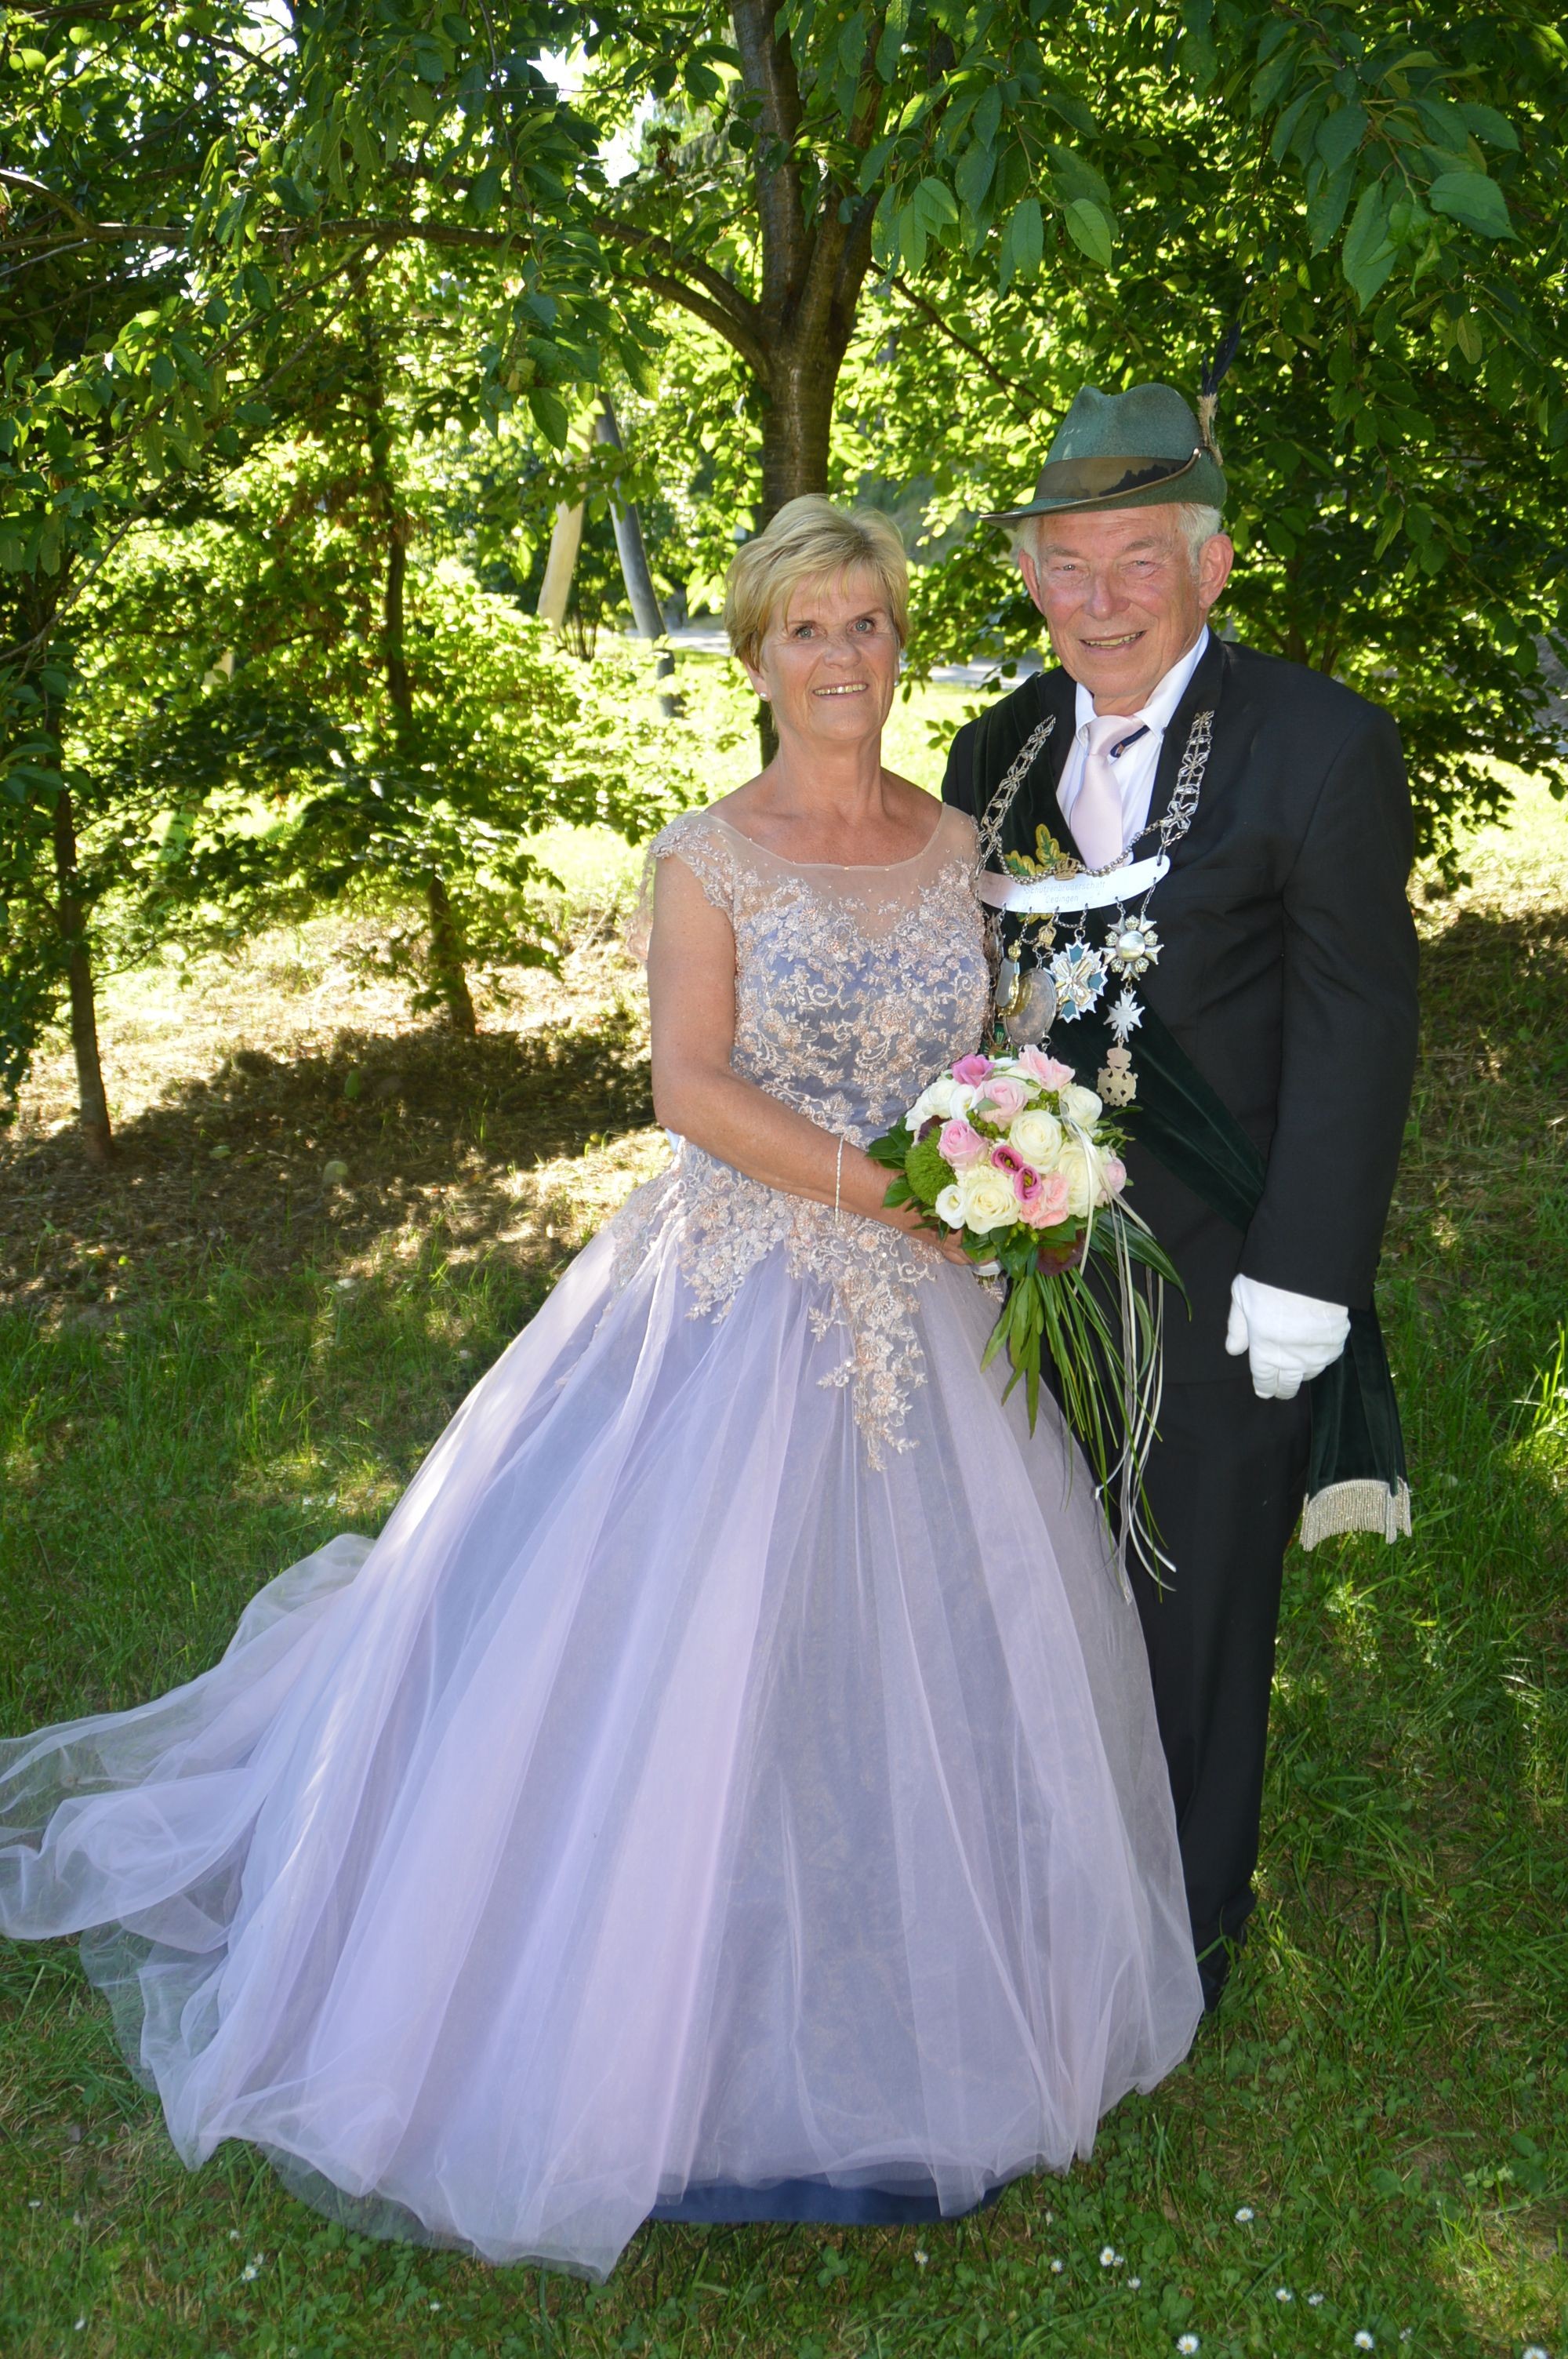 In seinem 50-jährigen Jubelkönigsjahr sicherte sich Dietmar Heite im Jahr 2019 die Kaiserwürde und regiert mit seiner Frau Marlies. von Nicole Voss